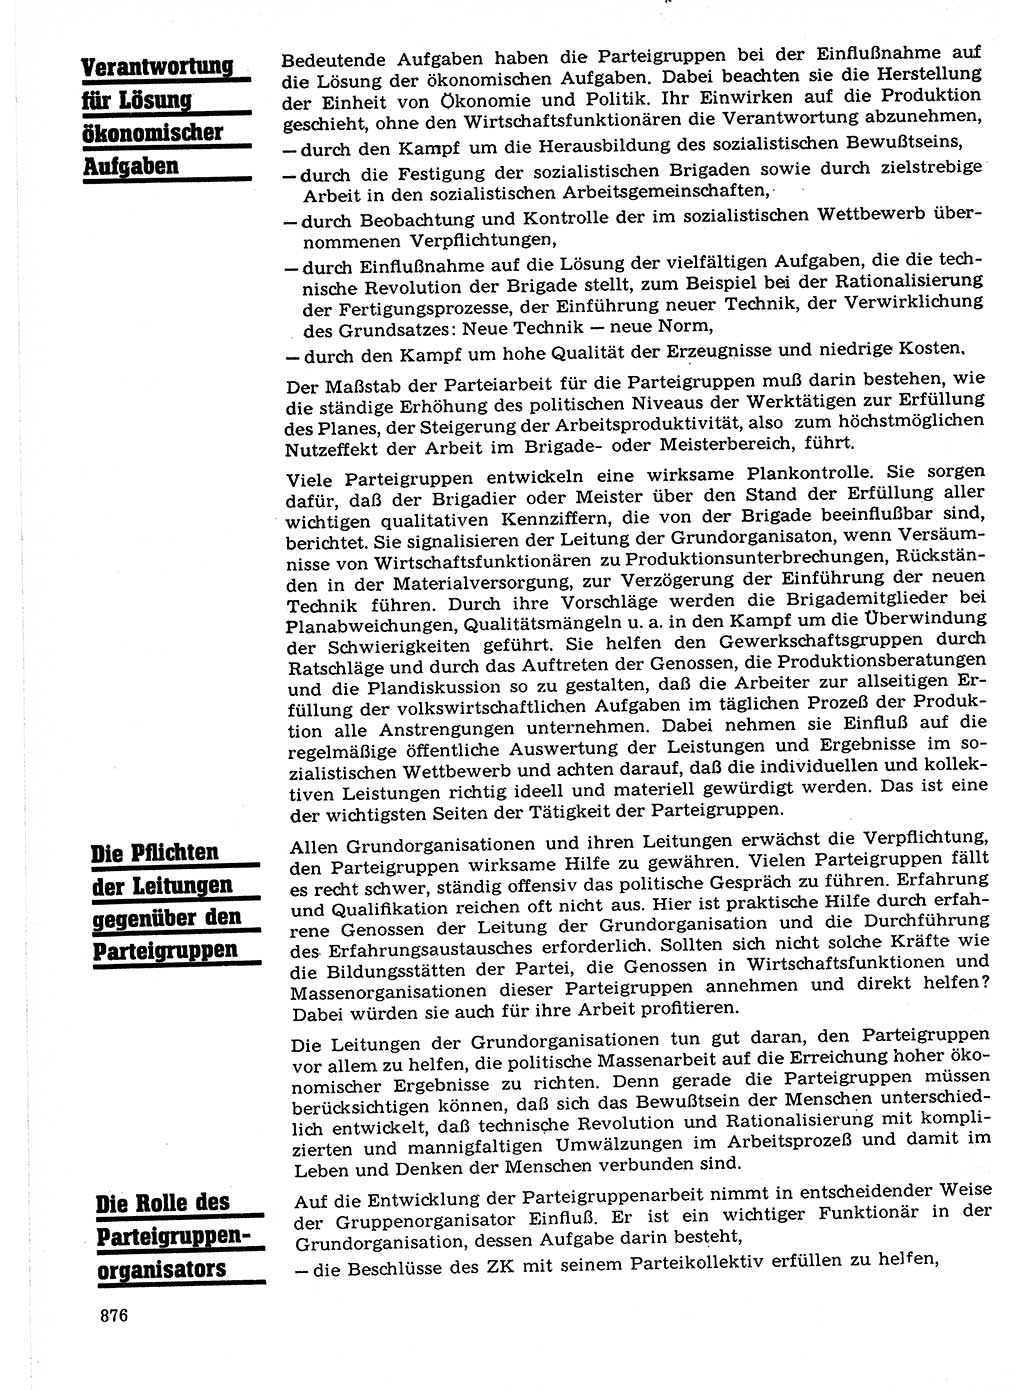 Neuer Weg (NW), Organ des Zentralkomitees (ZK) der SED (Sozialistische Einheitspartei Deutschlands) für Fragen des Parteilebens, 21. Jahrgang [Deutsche Demokratische Republik (DDR)] 1966, Seite 876 (NW ZK SED DDR 1966, S. 876)